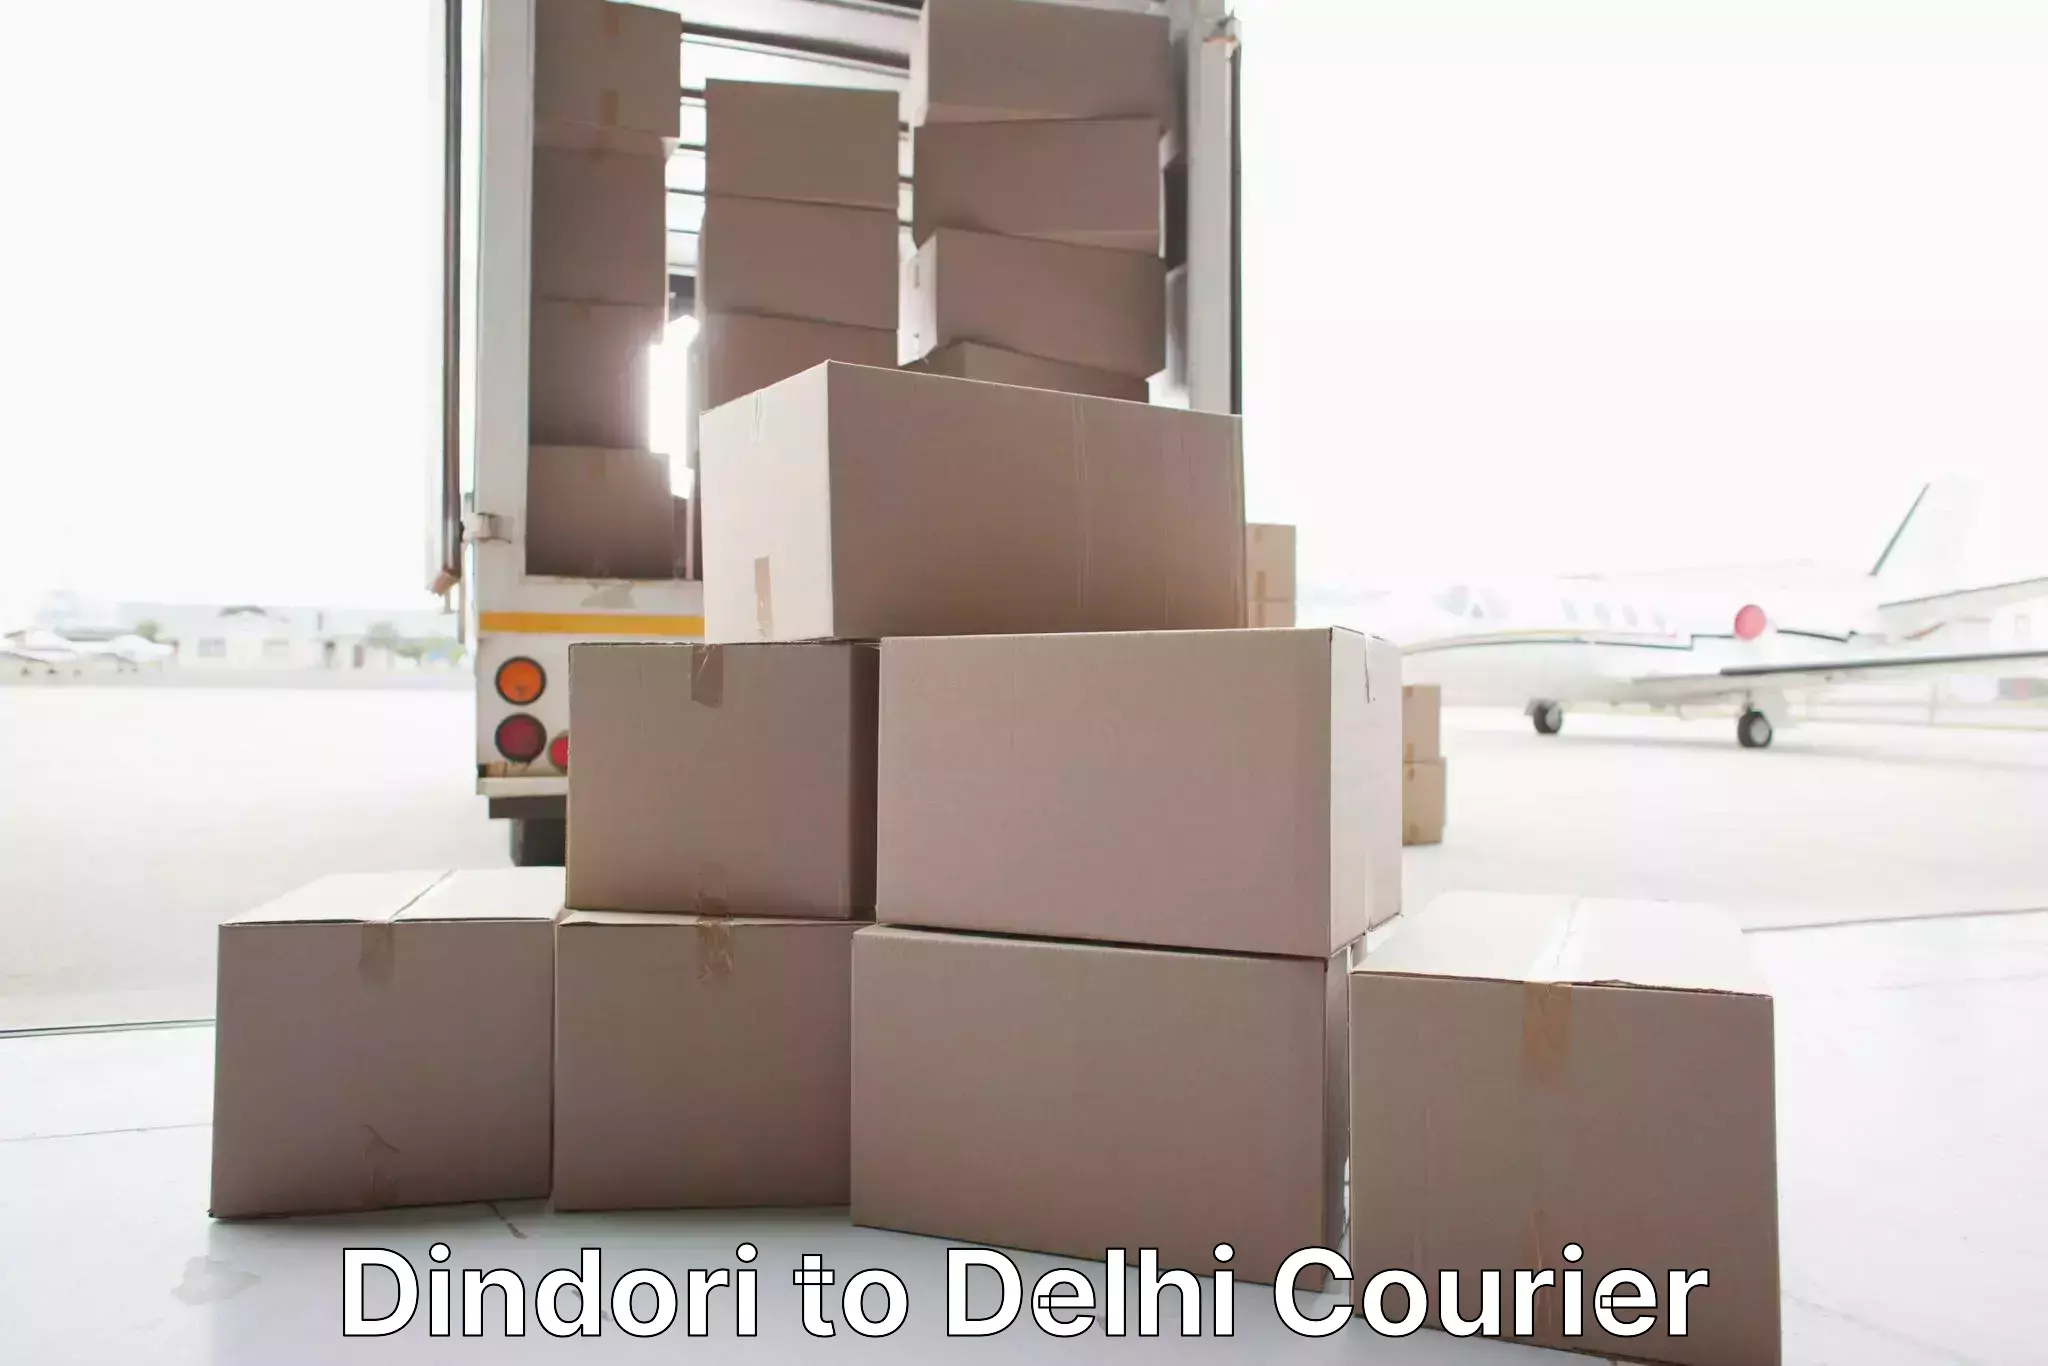 Furniture transport professionals Dindori to Delhi